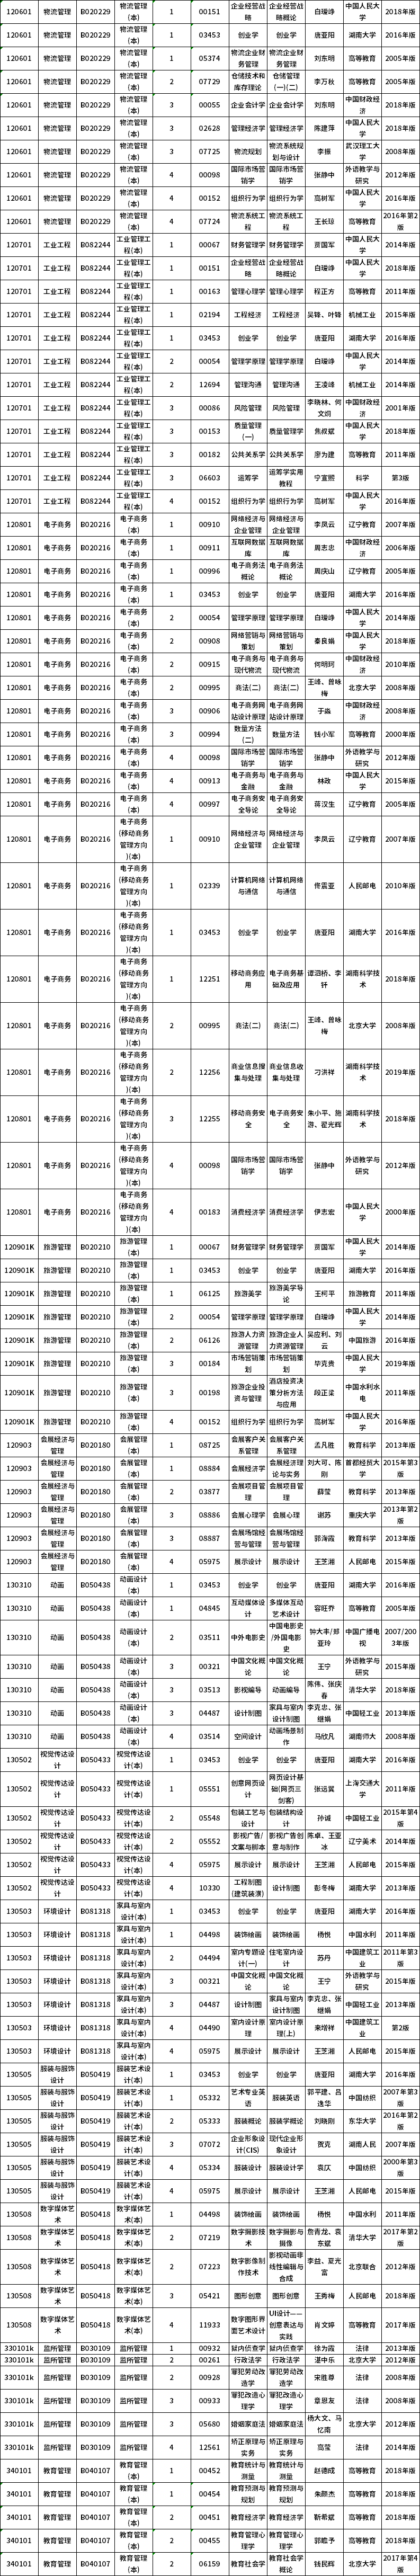 2020年10月湖南自学考试课程安排及教材目录